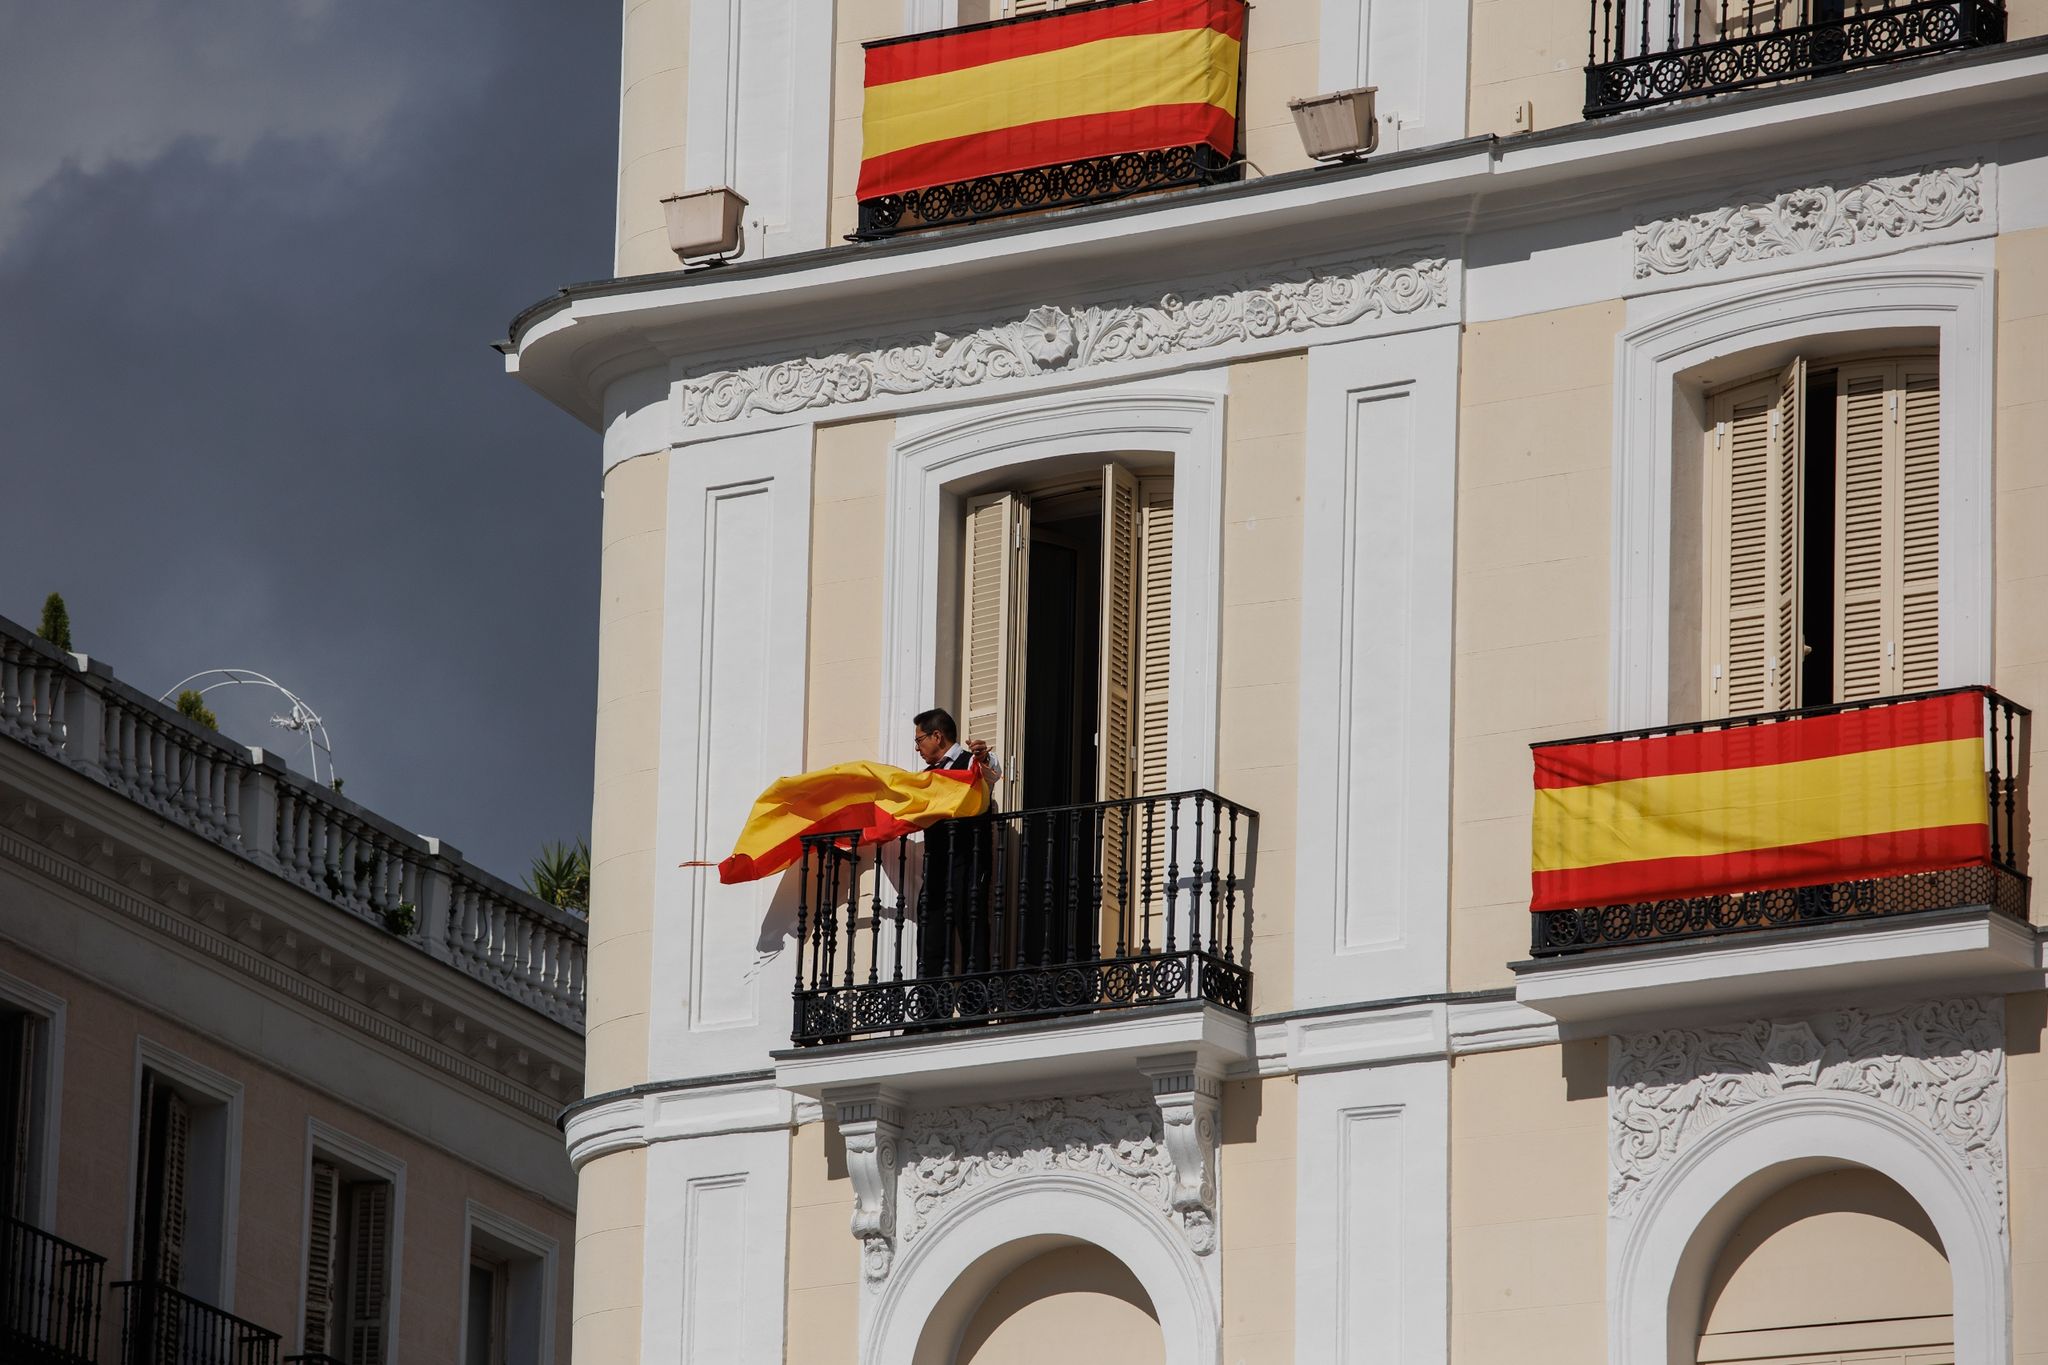 Die Vorbereitungen laufen: Eine Person hängt eine spanische Flagge an einem Balkon auf. Morgen, an ihrem 18. Geburtstag, soll die spanische Thronfolgerin Leonor Eid auf die Verfassung ablegen.